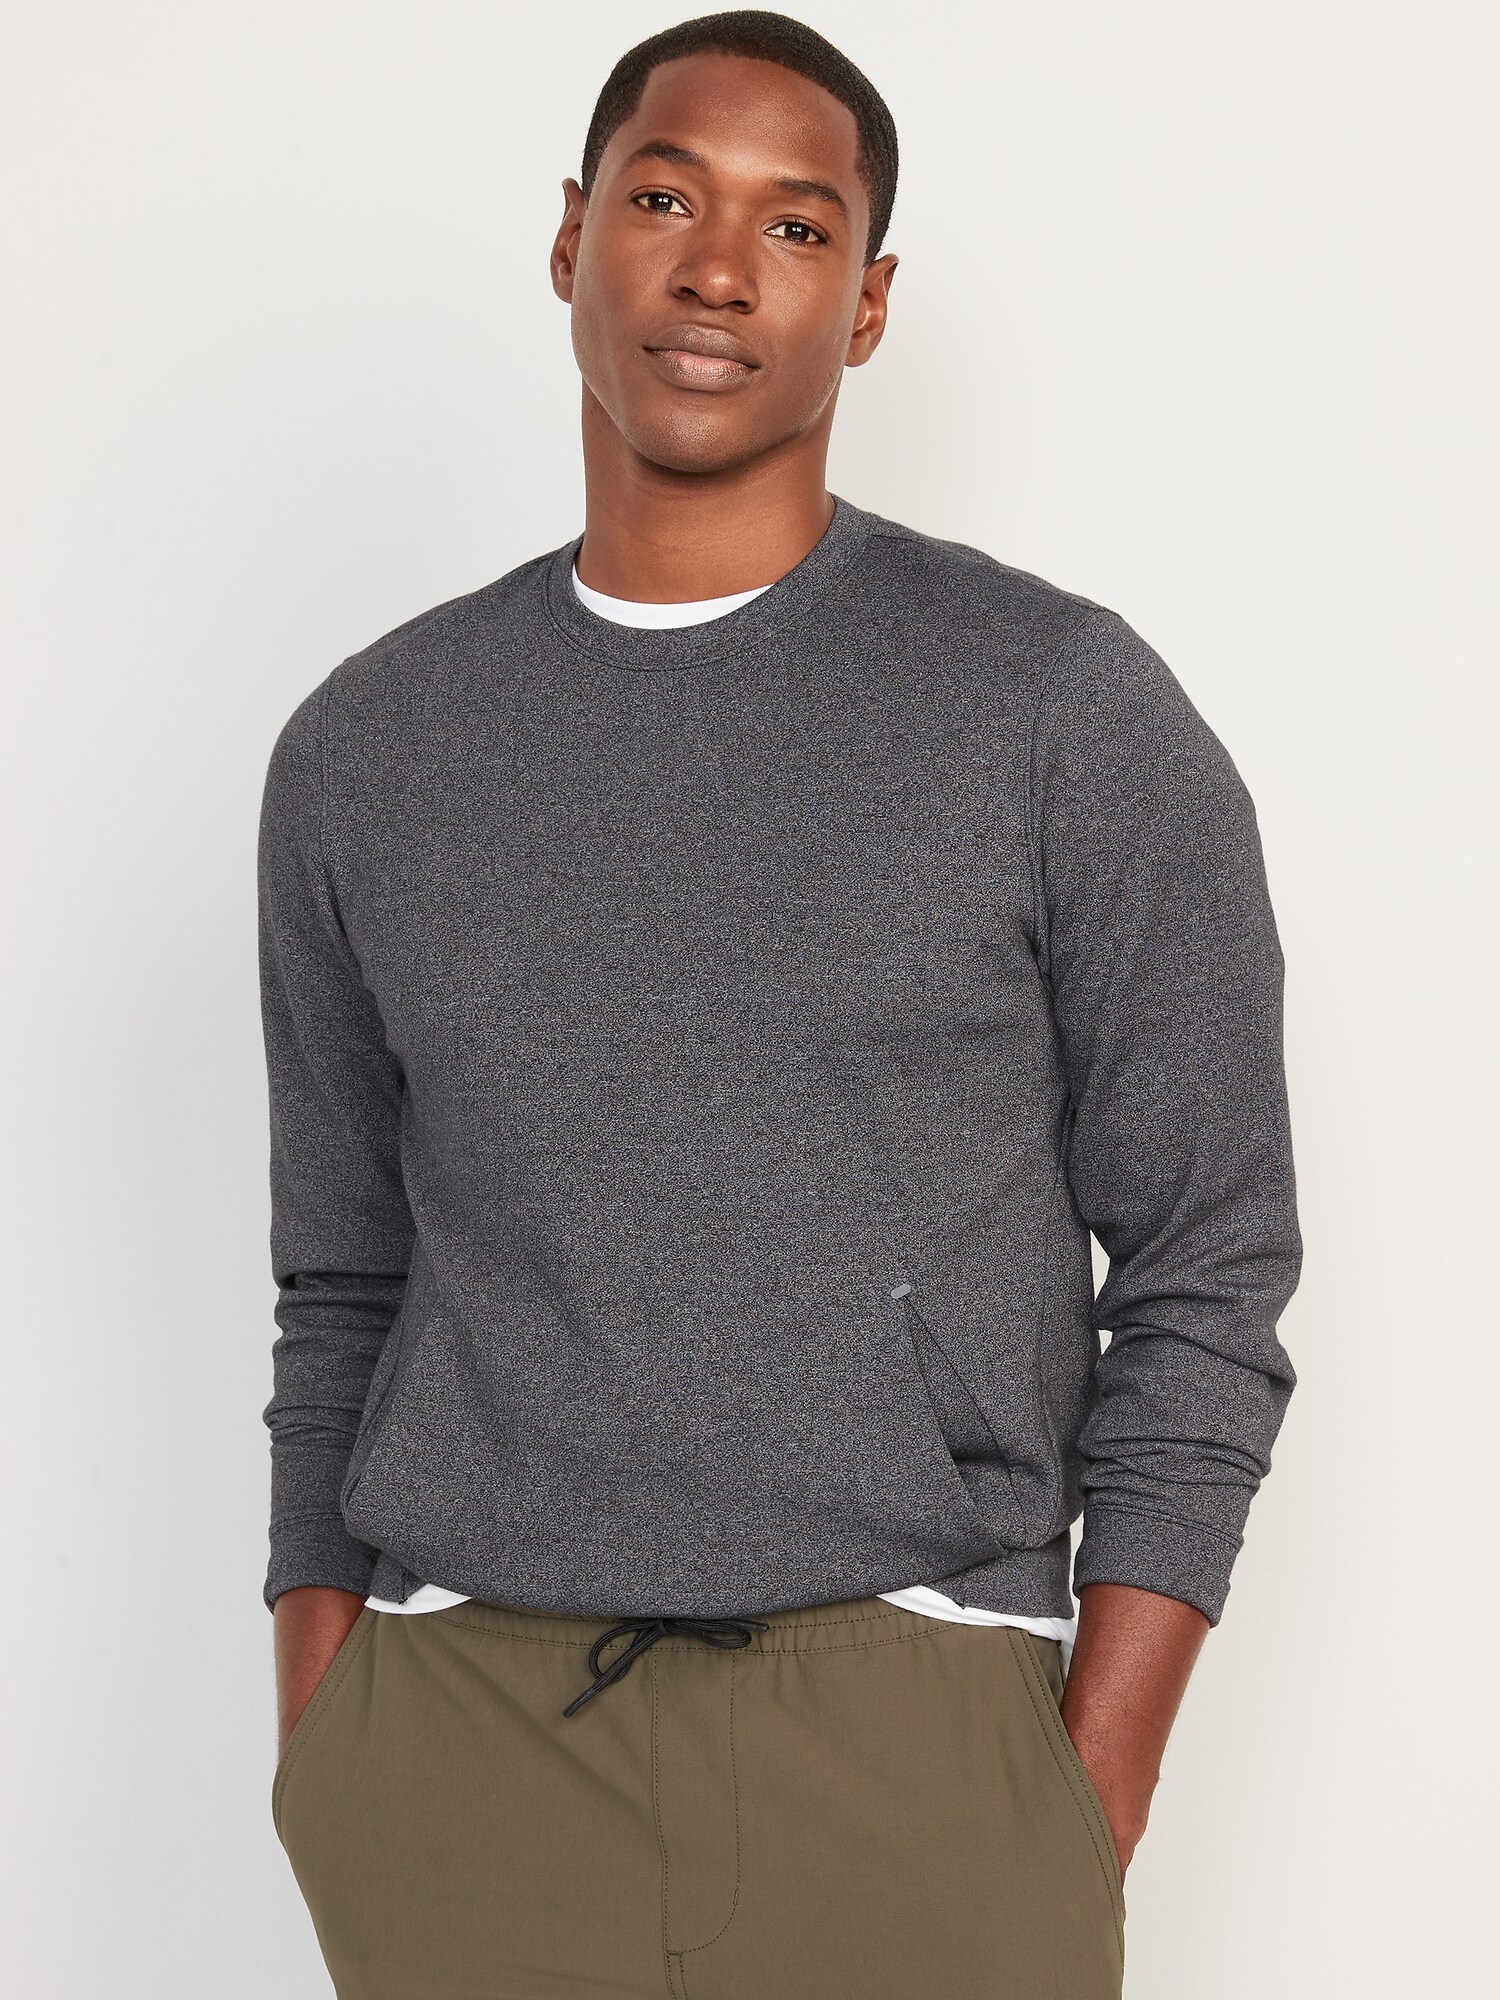 Dynamic Fleece Hidden-Pocket Sweatshirt for Men | Old Navy